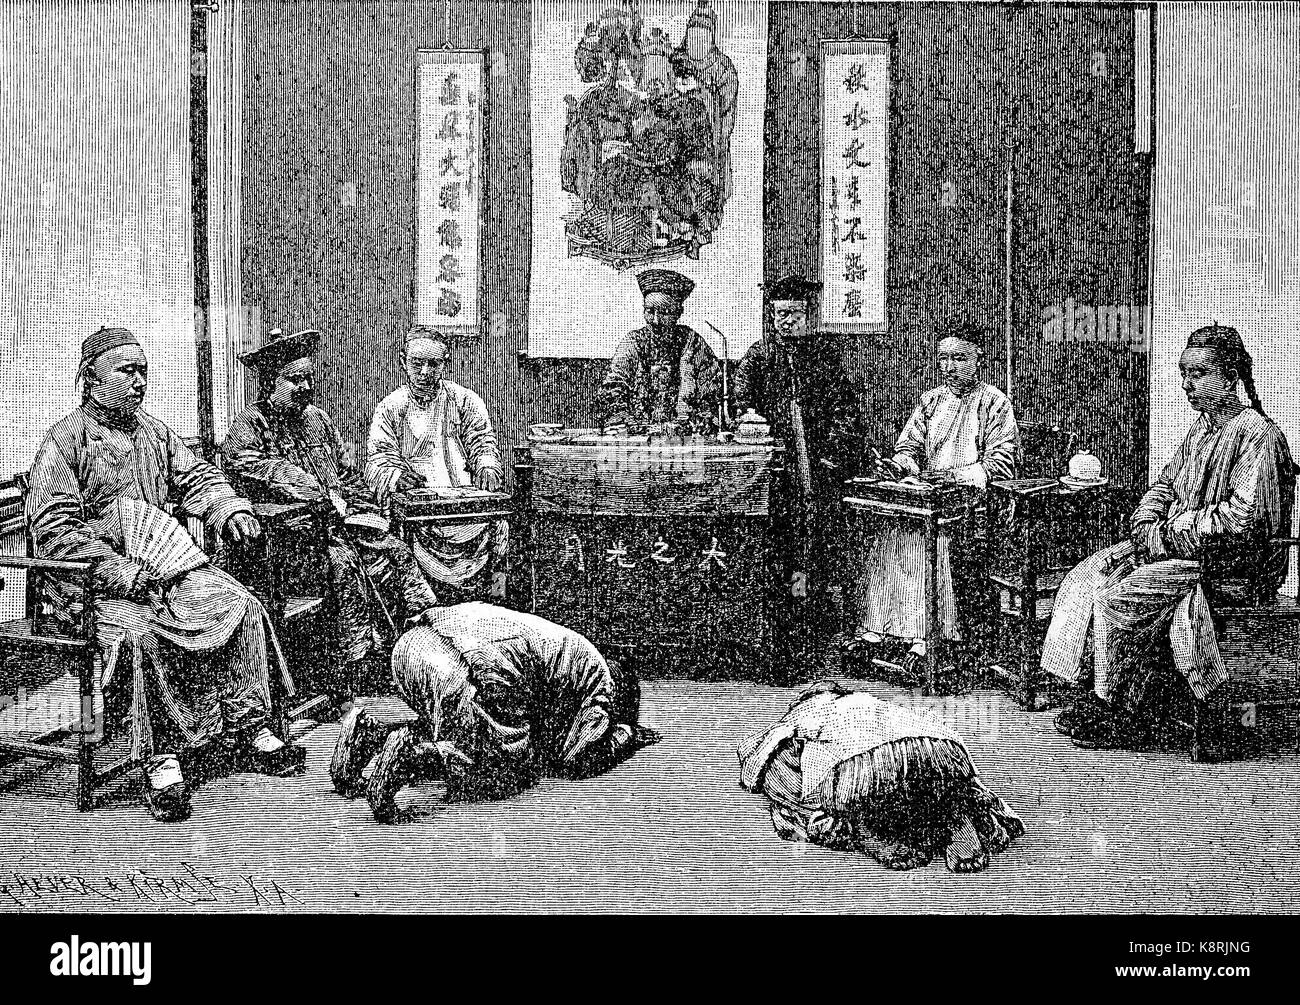 Une réunion de la cour en Chine, une session des Gerichts en Chine, 1850, l'amélioration numérique reproduction d'une gravure sur bois, publié dans le 19e siècle Banque D'Images